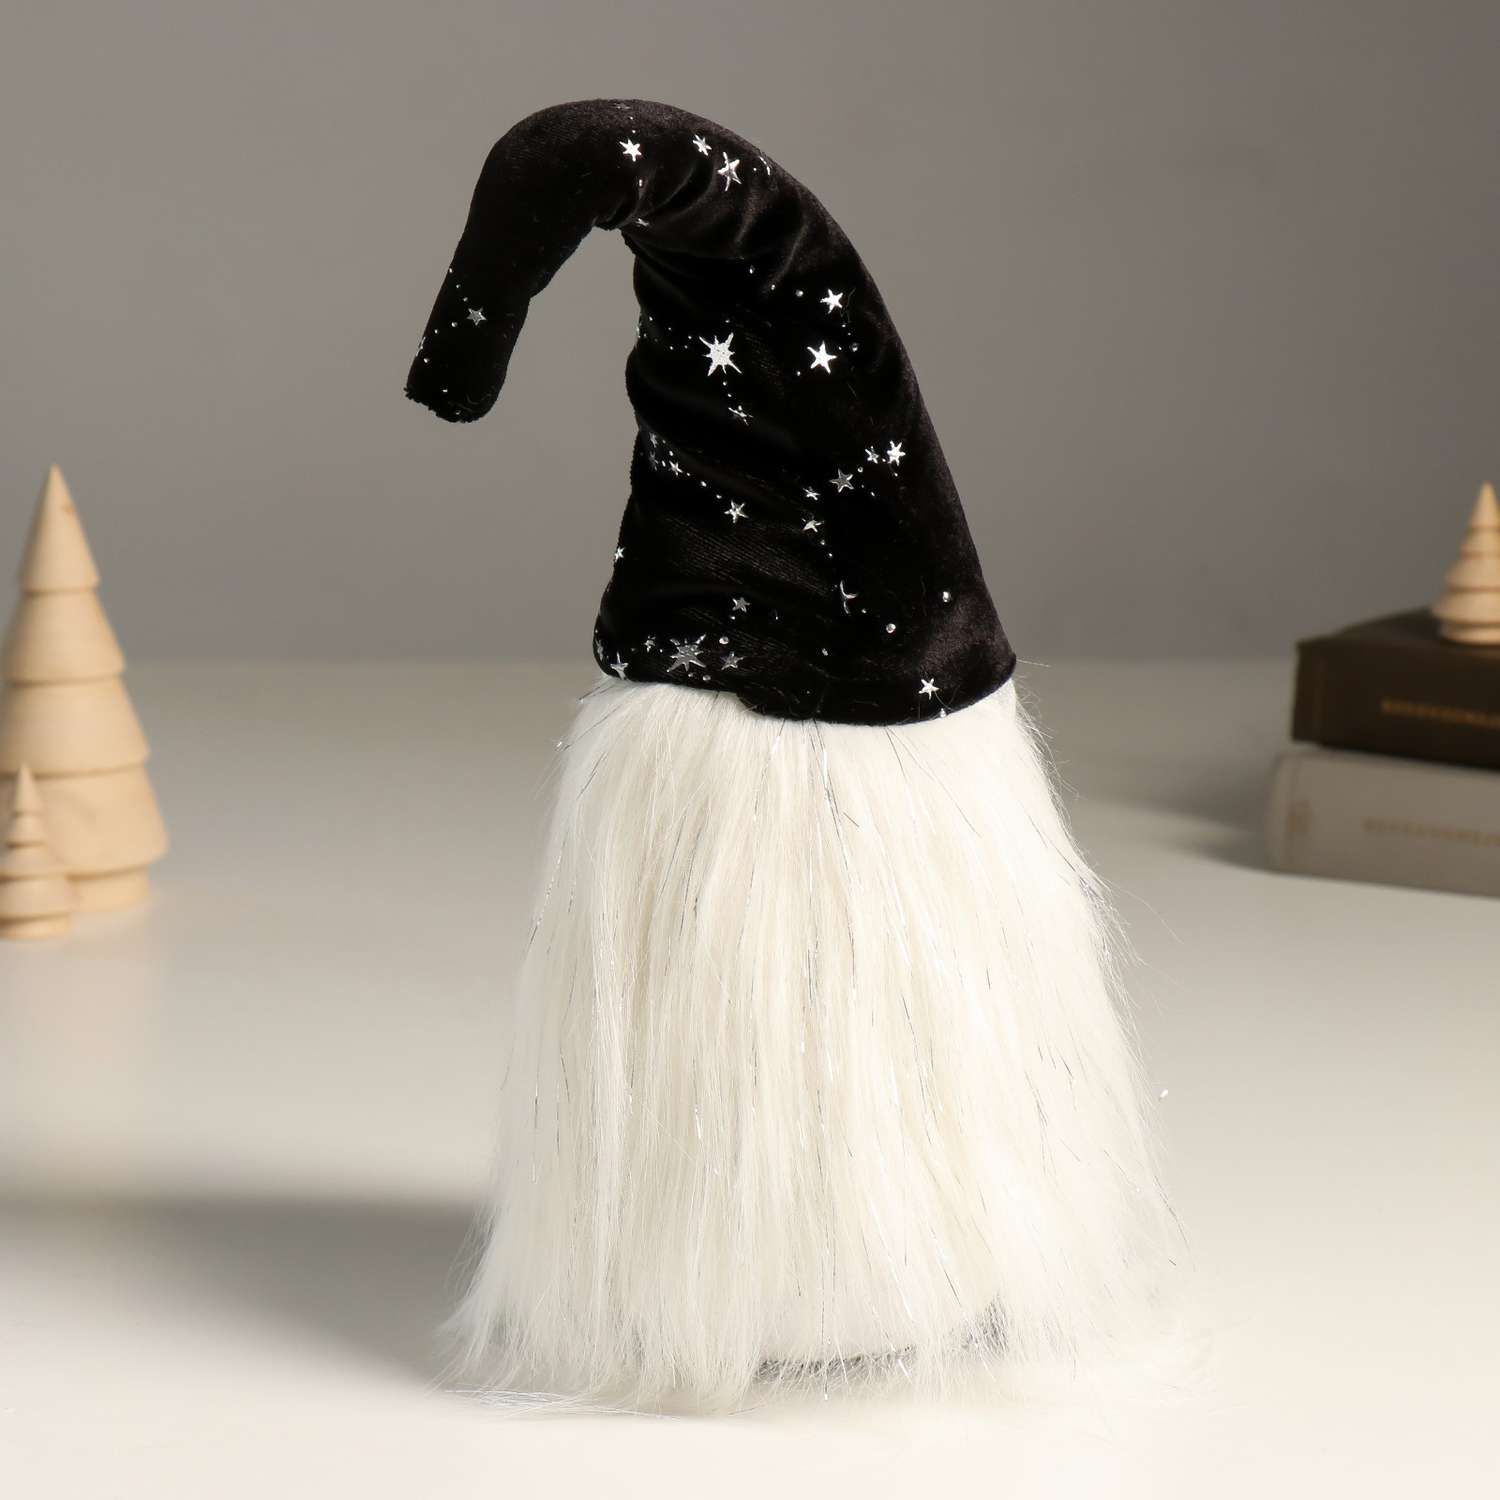 Кукла интерьерная Зимнее волшебство «Гном в чёрном колпаке со звездами со звёздочкой в руках» 36 см - фото 3